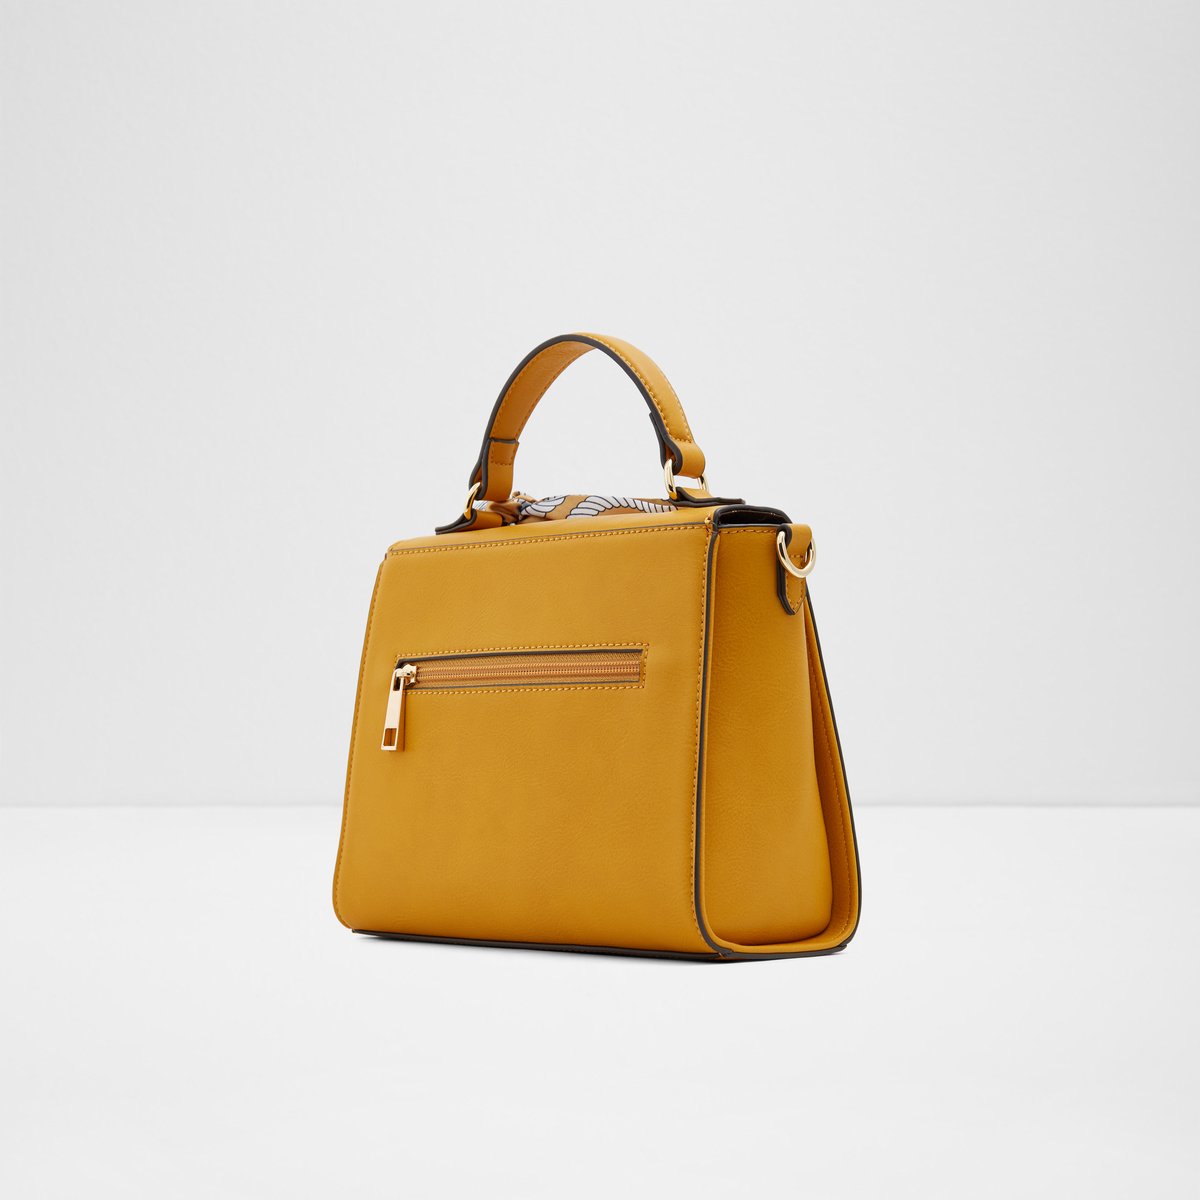 aldo yellow handbag